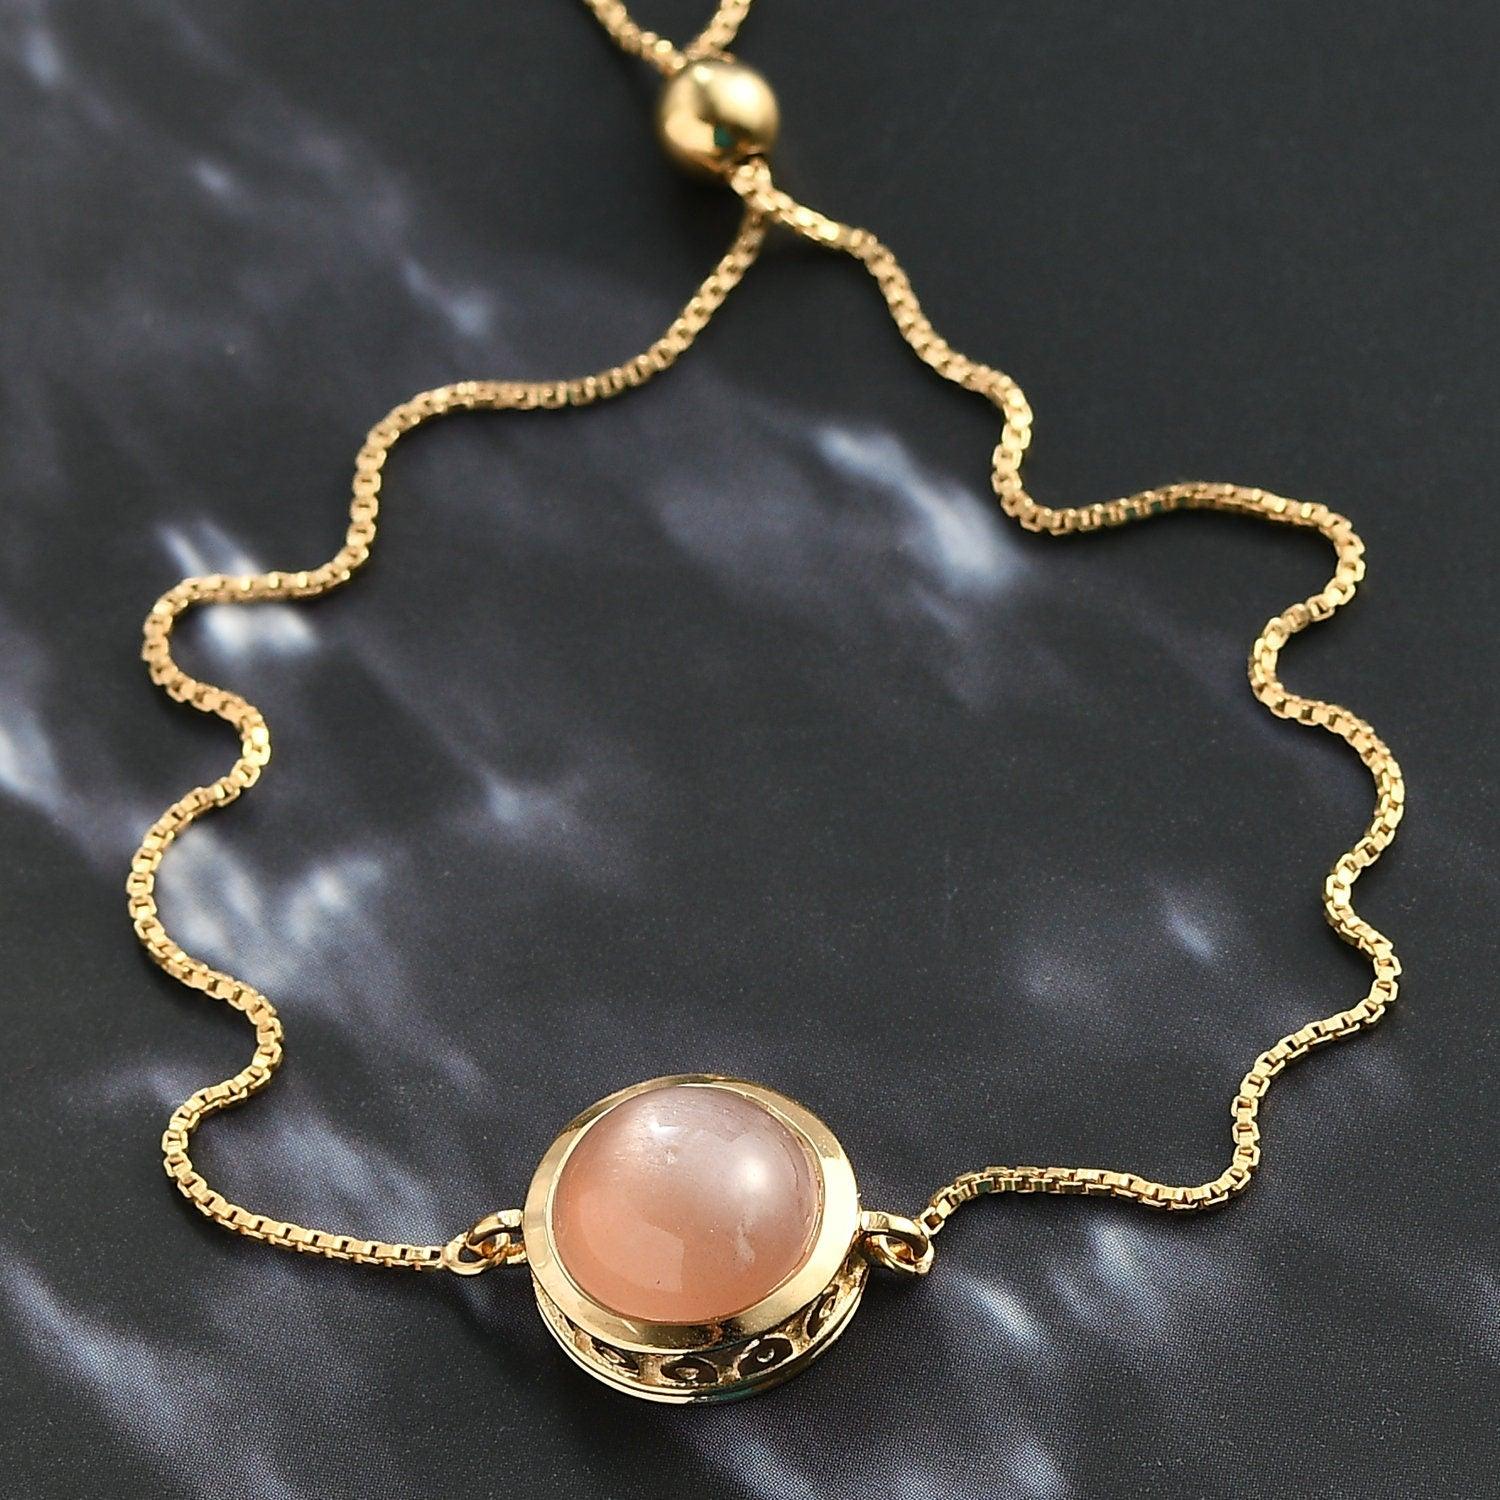 Peach Moonstone Bracelet | Sacral Chakra Bracelet | 925 Sterling Silver Bracelet | Bracelet for Women | Gift for her - Inspiring Jewellery